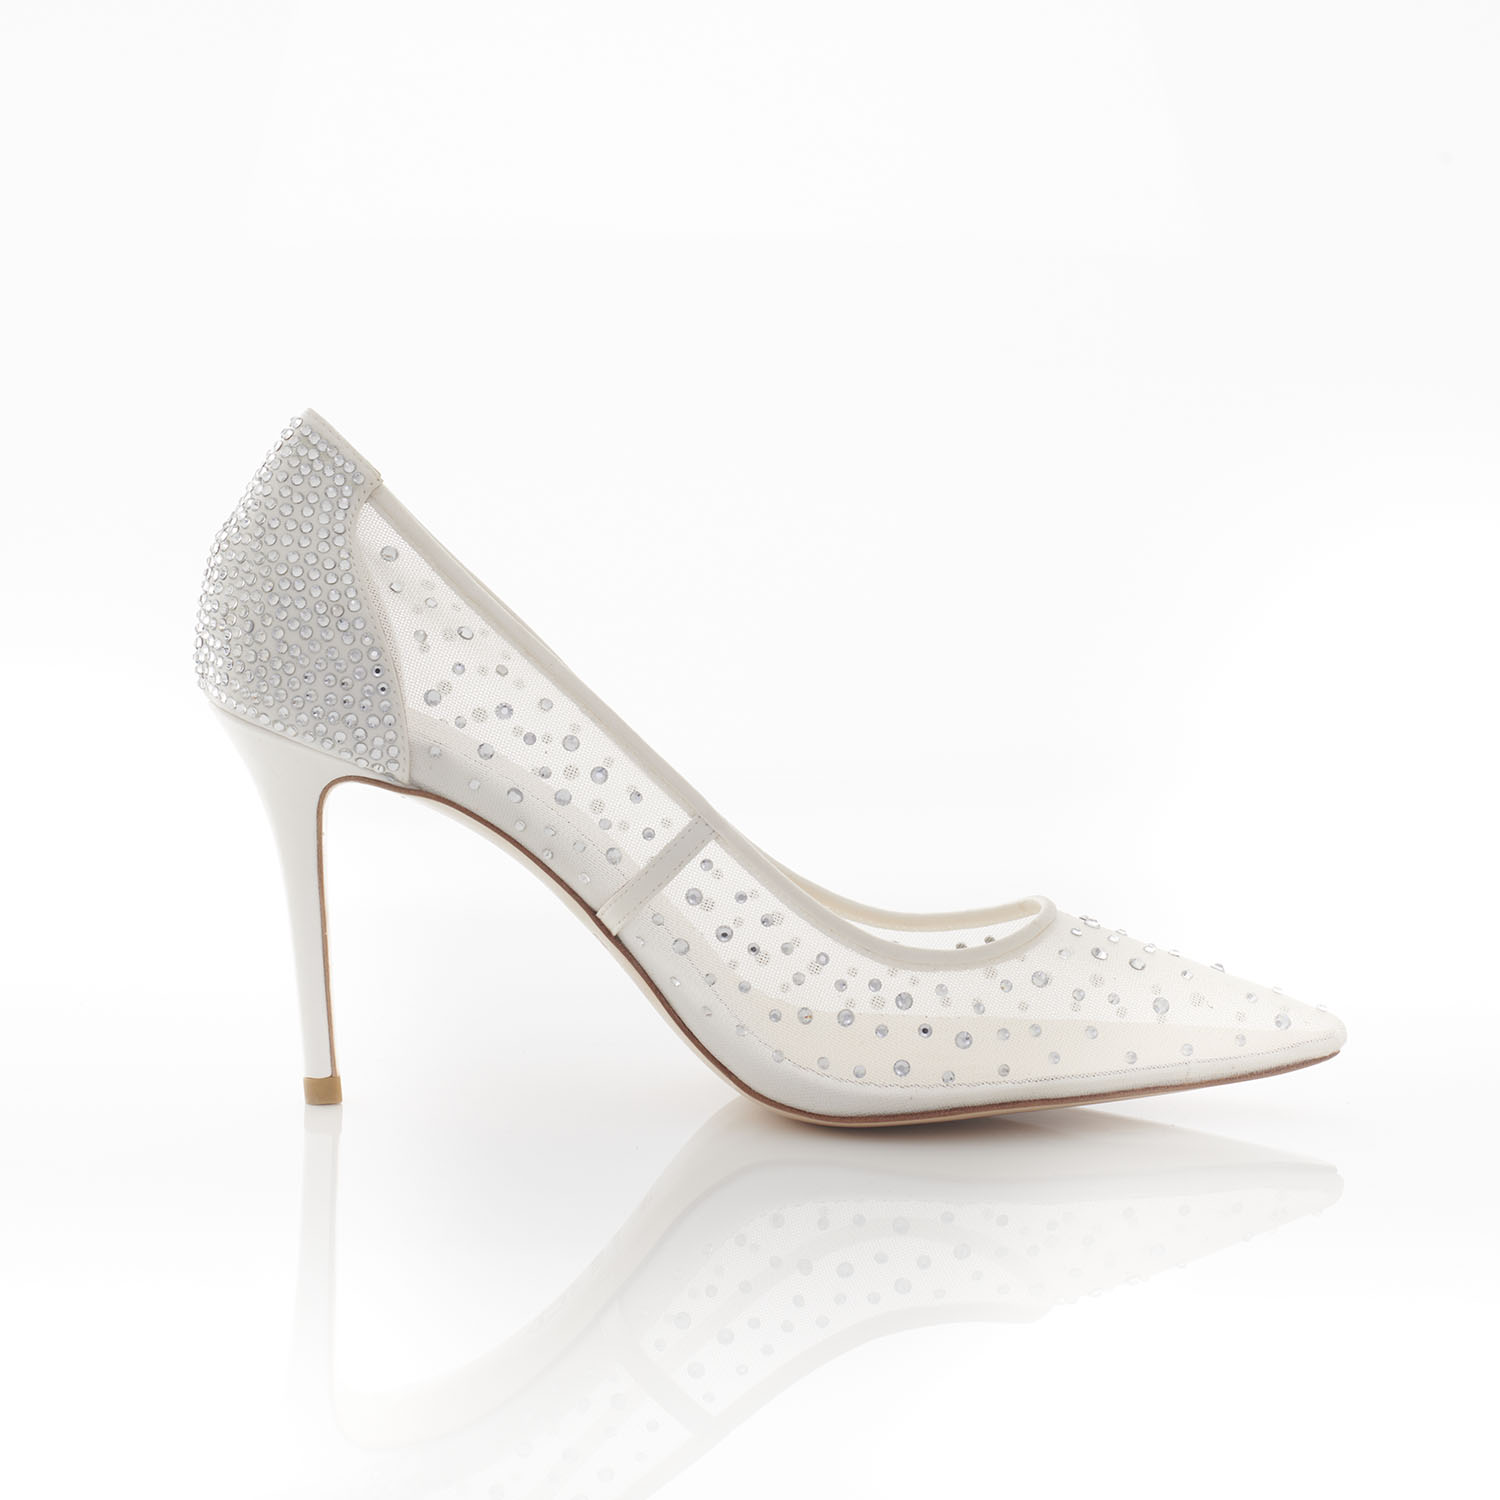 Zara - Panache Bridal Shoes